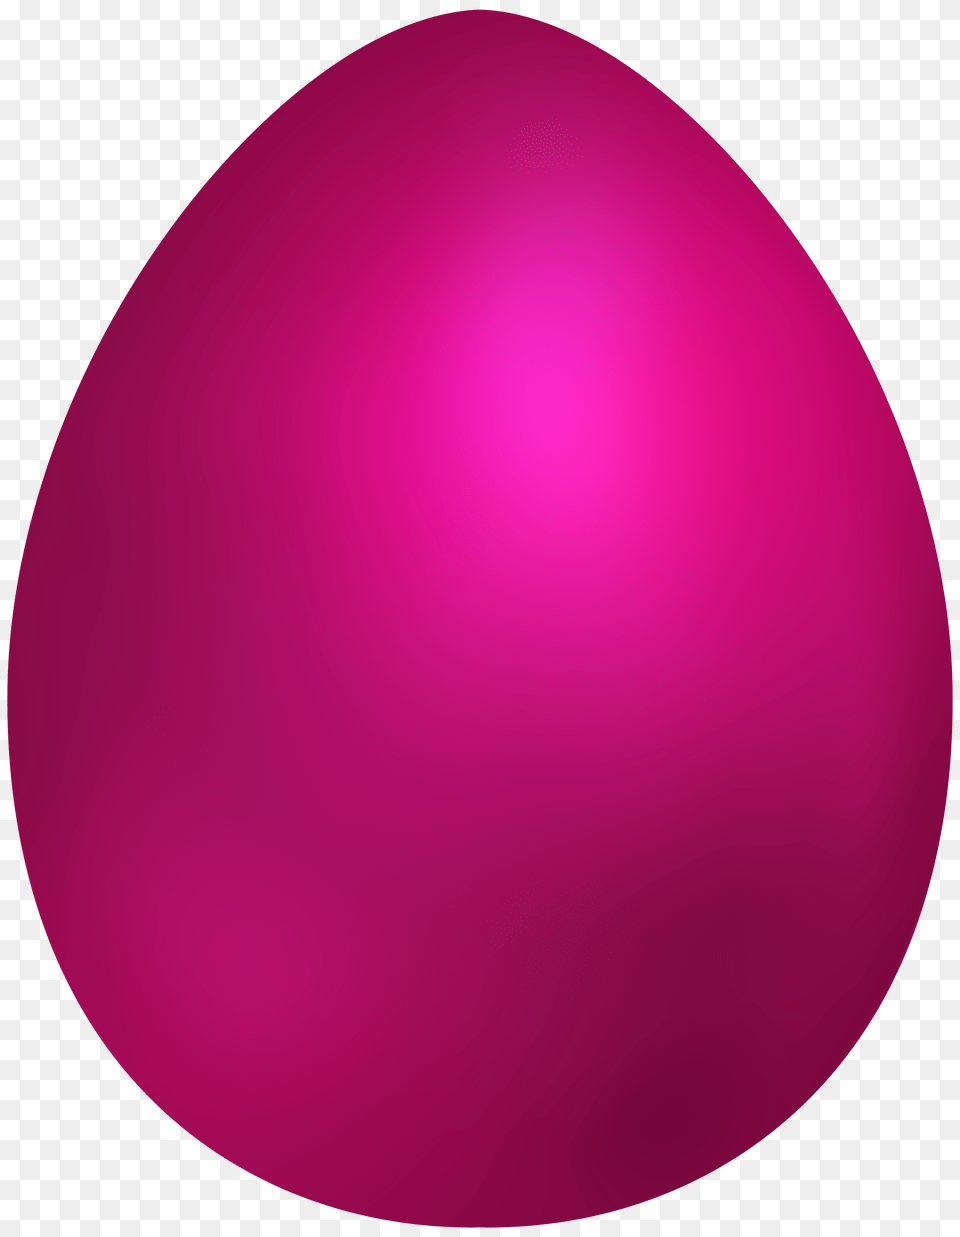 Pink Easter Egg Clip Art, Easter Egg, Food, Clothing, Hardhat Png